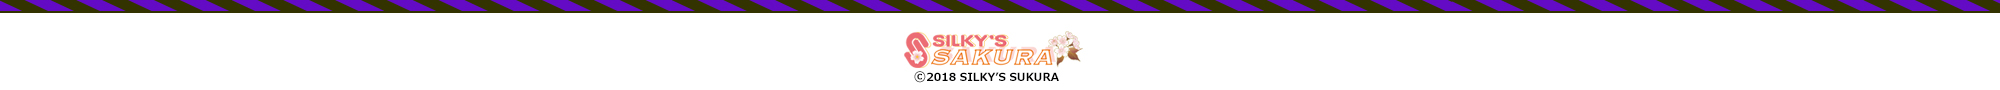 (c) 2018 SILKY'S SAKURA